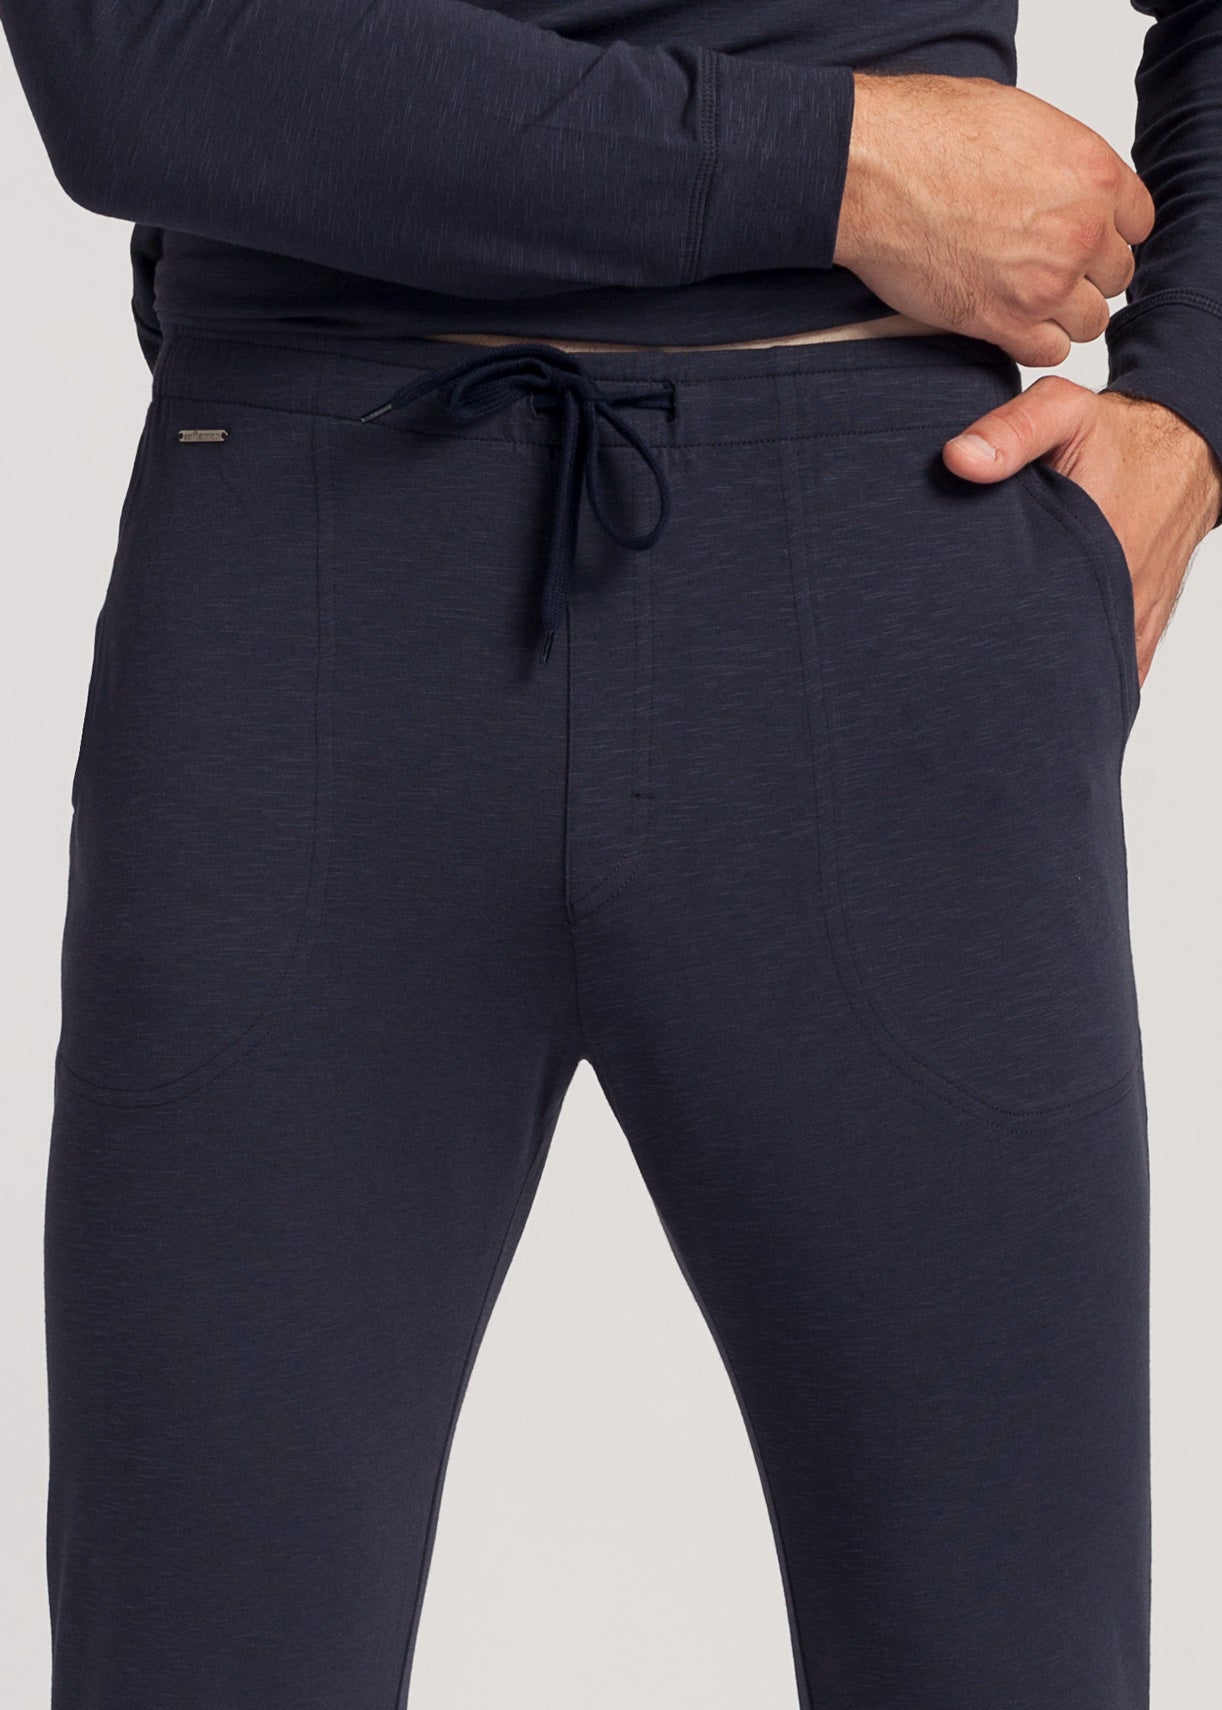 Pantaloni Bărbați Soft Touch Modal